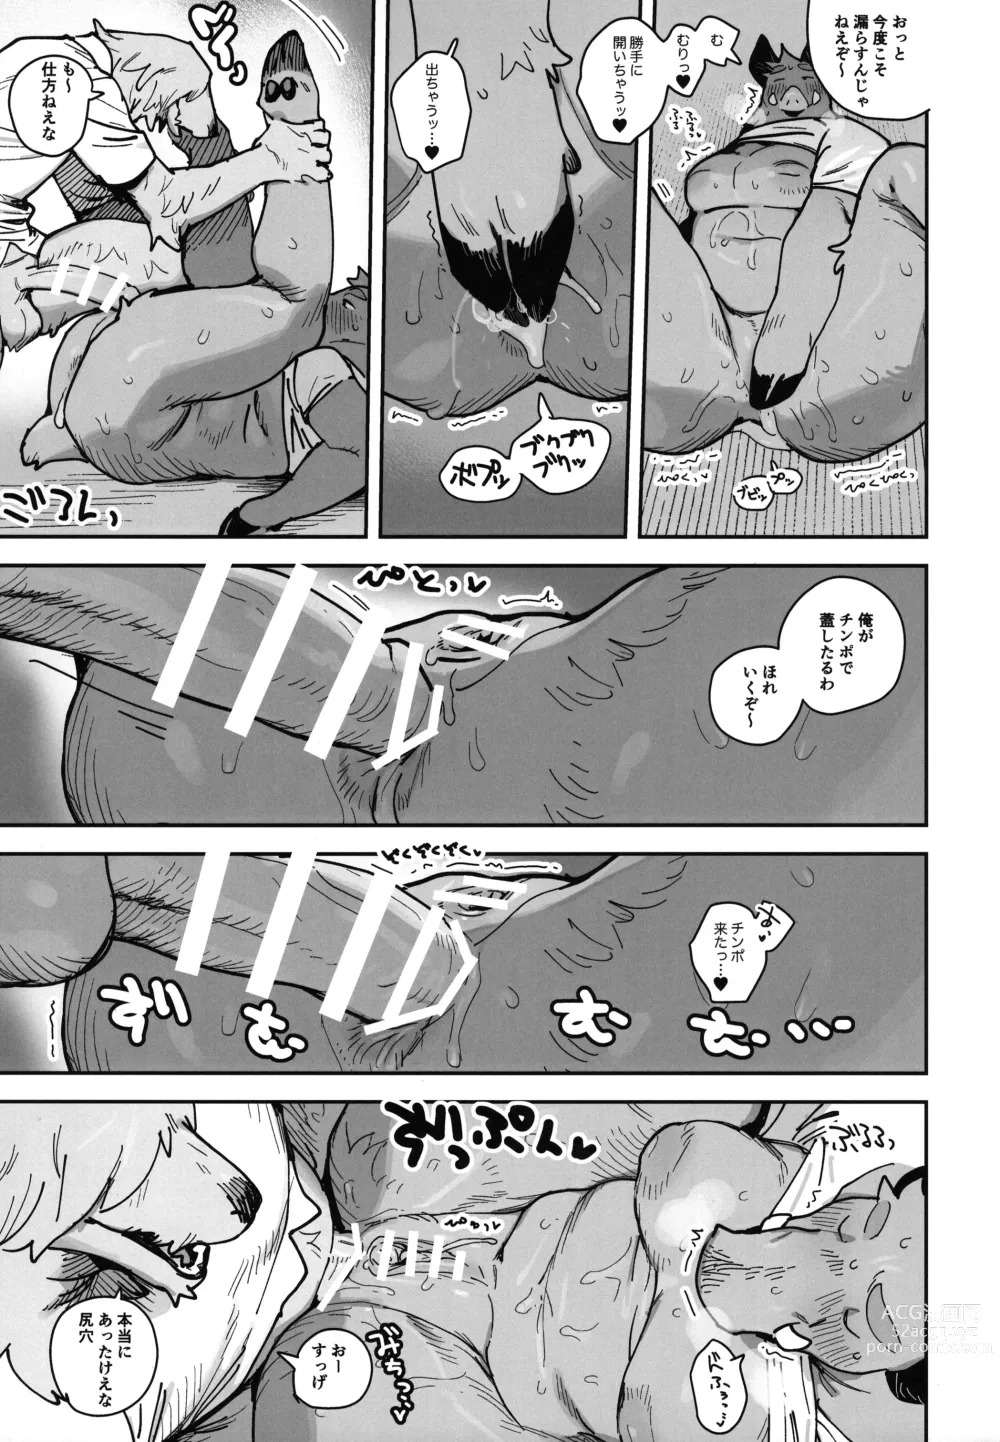 Page 29 of doujinshi Inoshishiri Ana